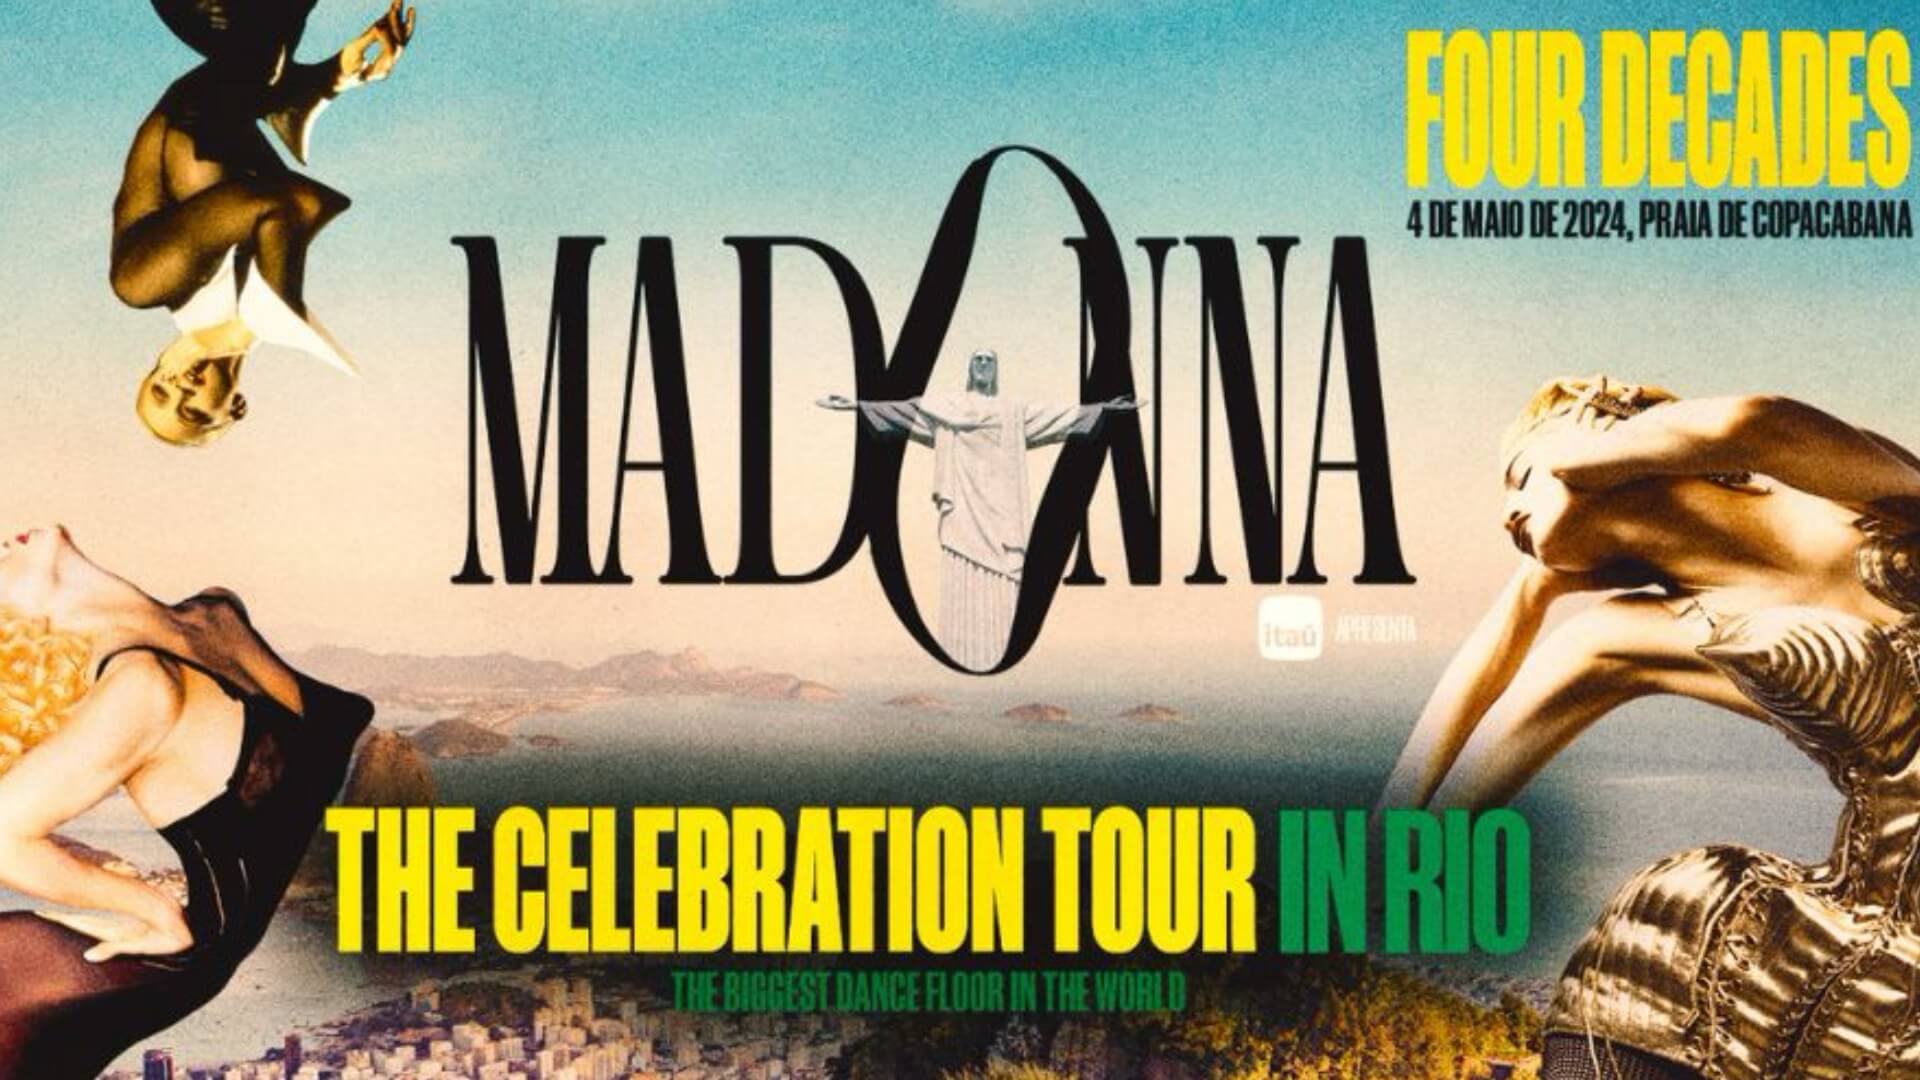 The Celebration Tour: Madonna movimenta economia e ativações no Rio